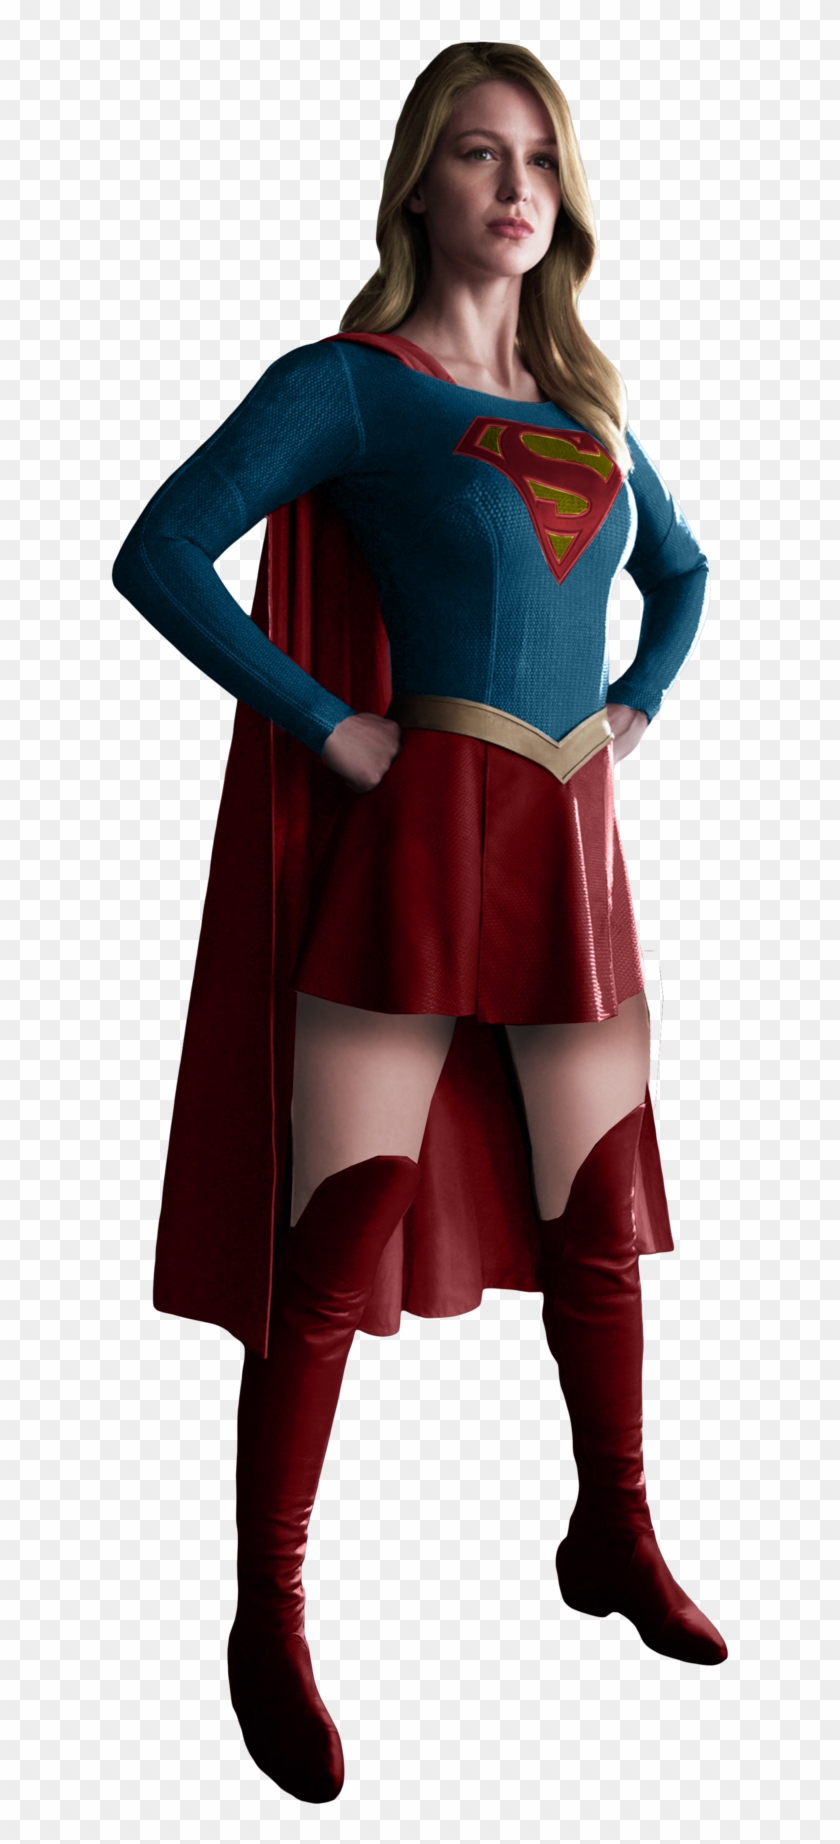 Supergirl Png - Supergirl Melissa Benoist Costume - Free Transparent PNG  Clipart Images Download